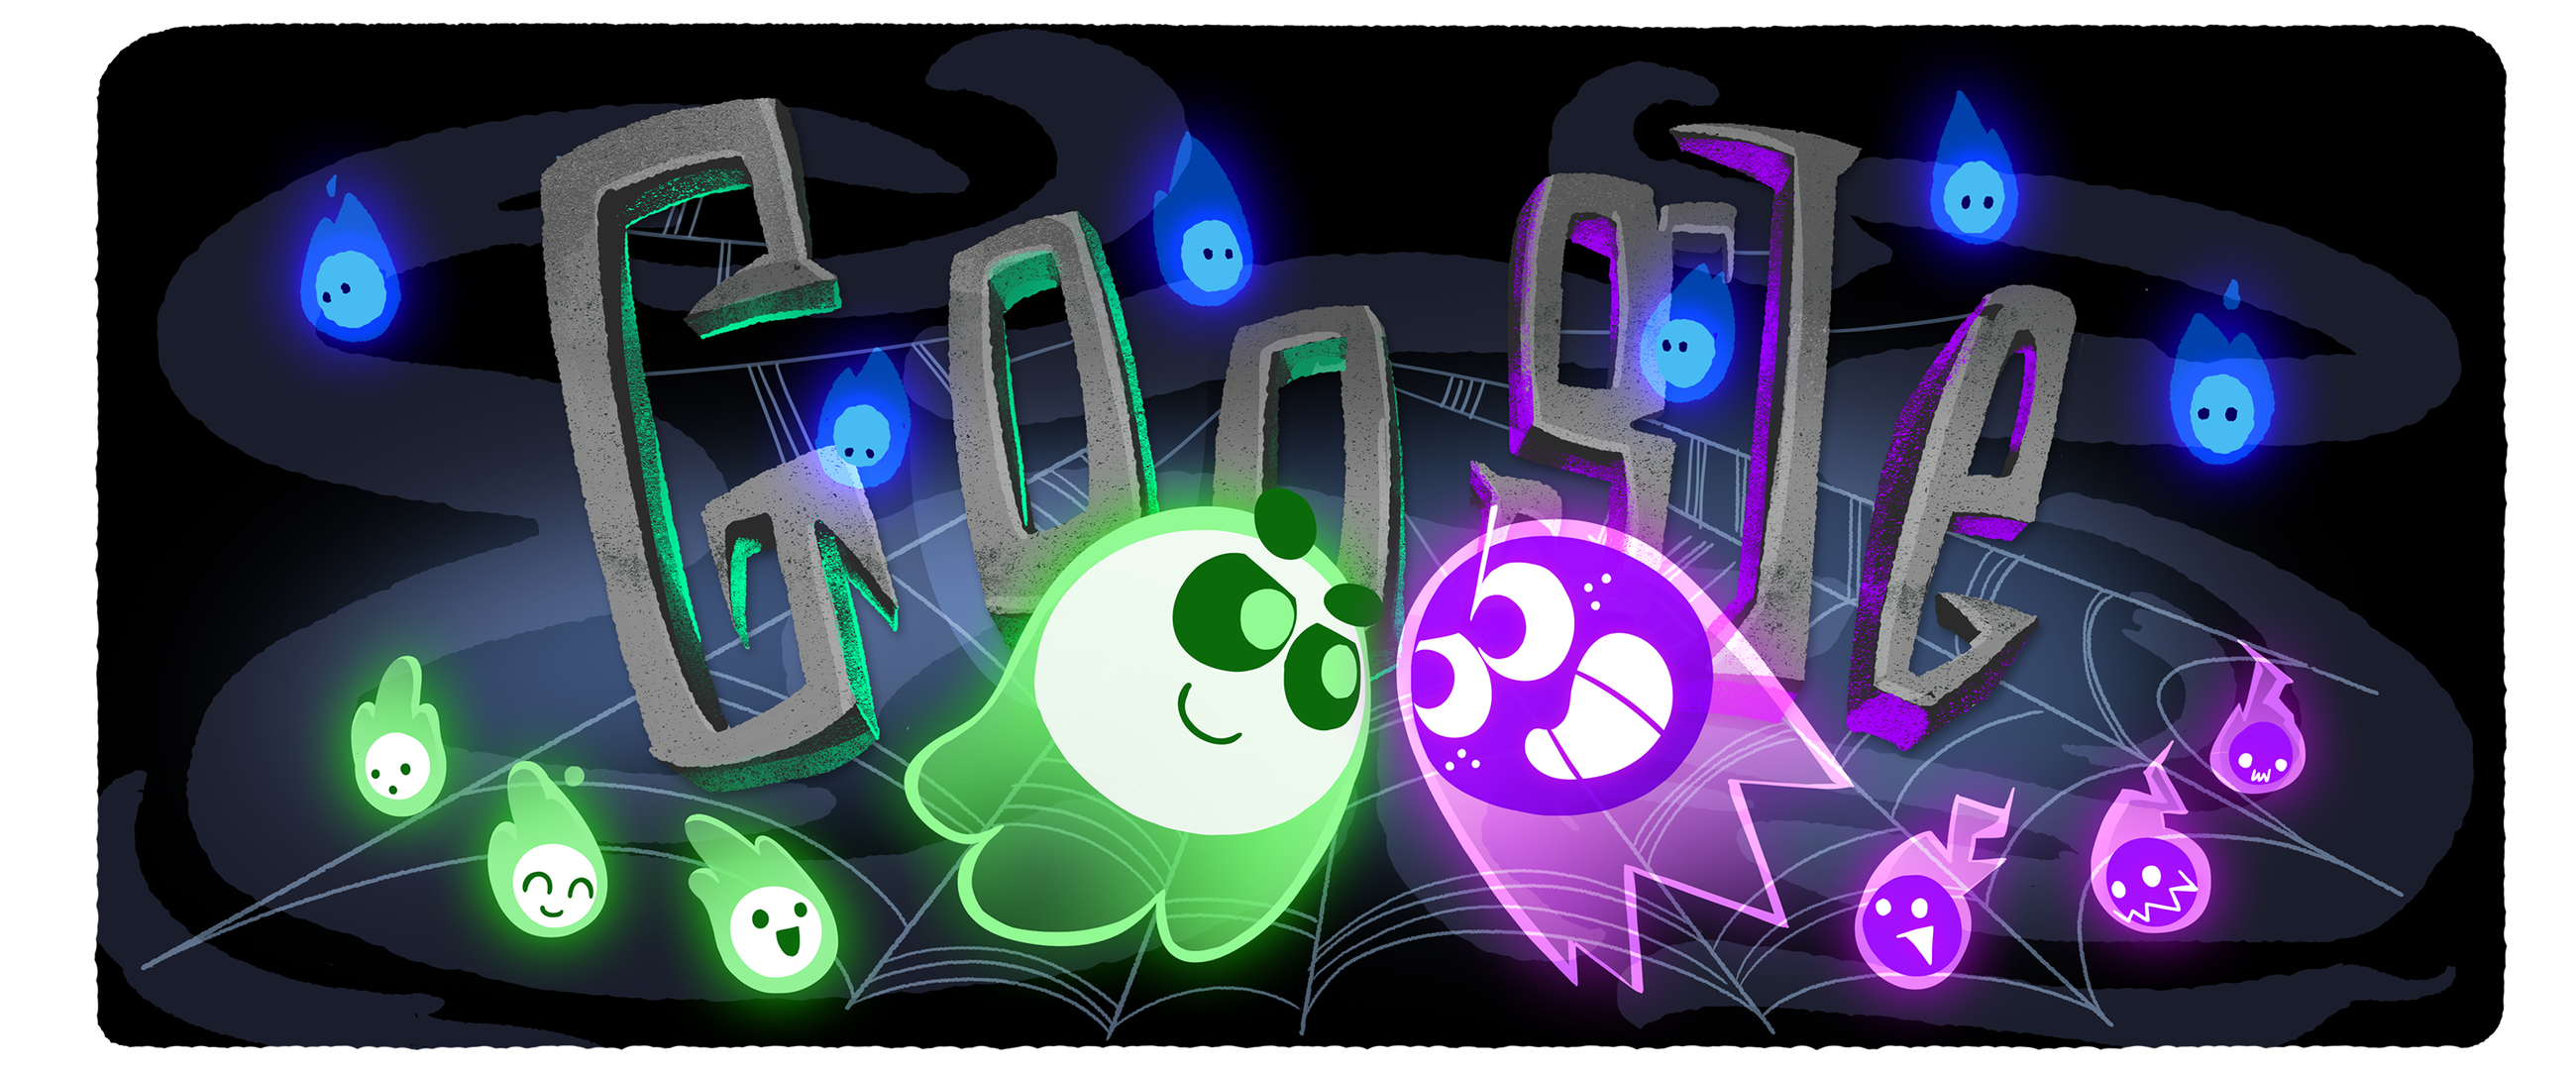 Google's Halloween Doodle is Live